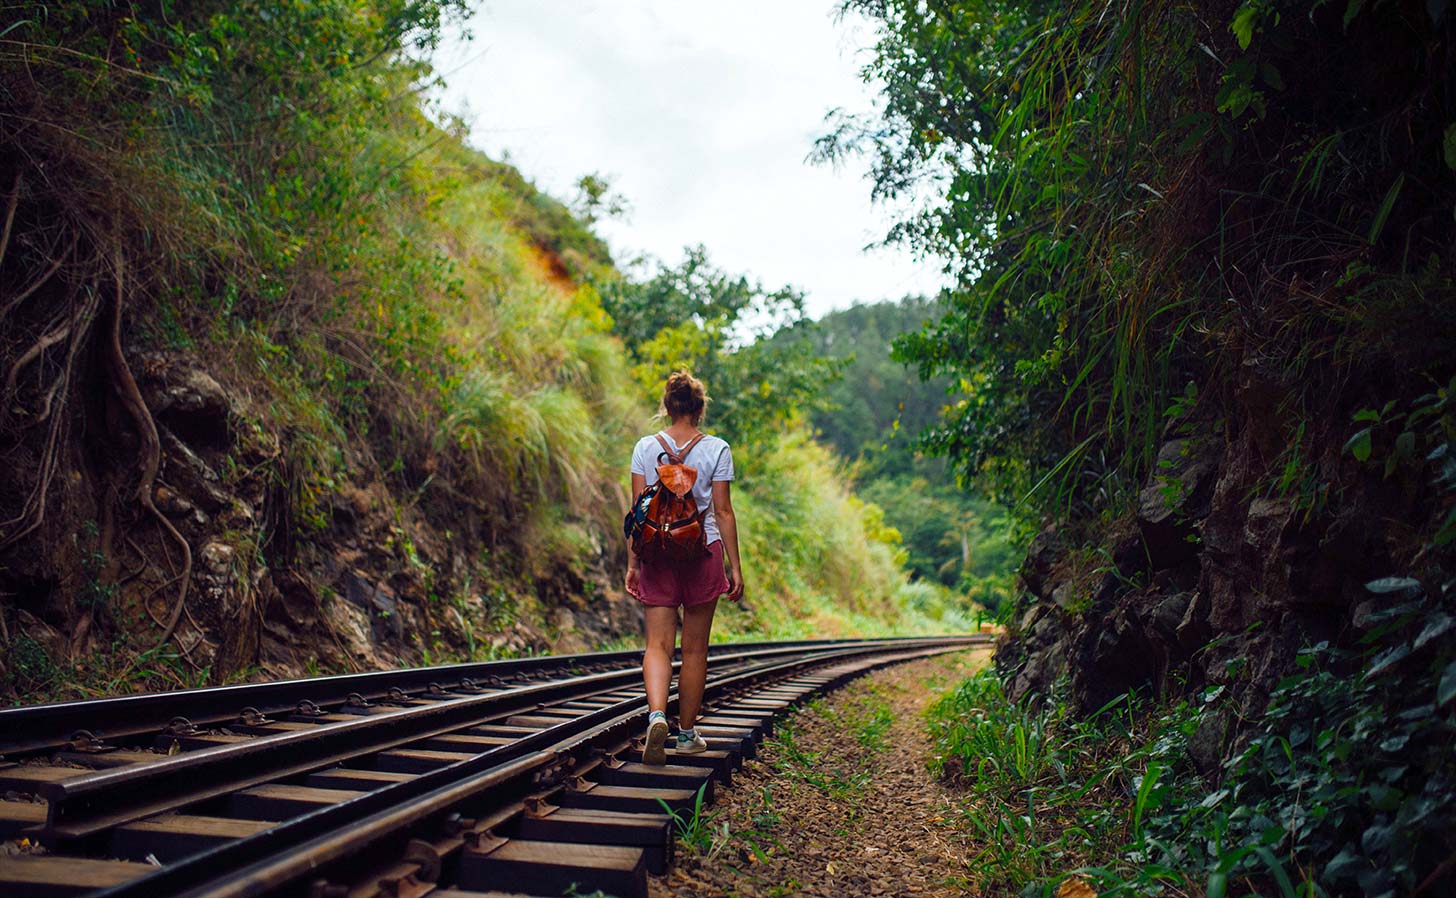 Läs om 14 kvinnliga ensamresenärer som utforskar världen. Foto: Etienne Boulanger / Unsplash